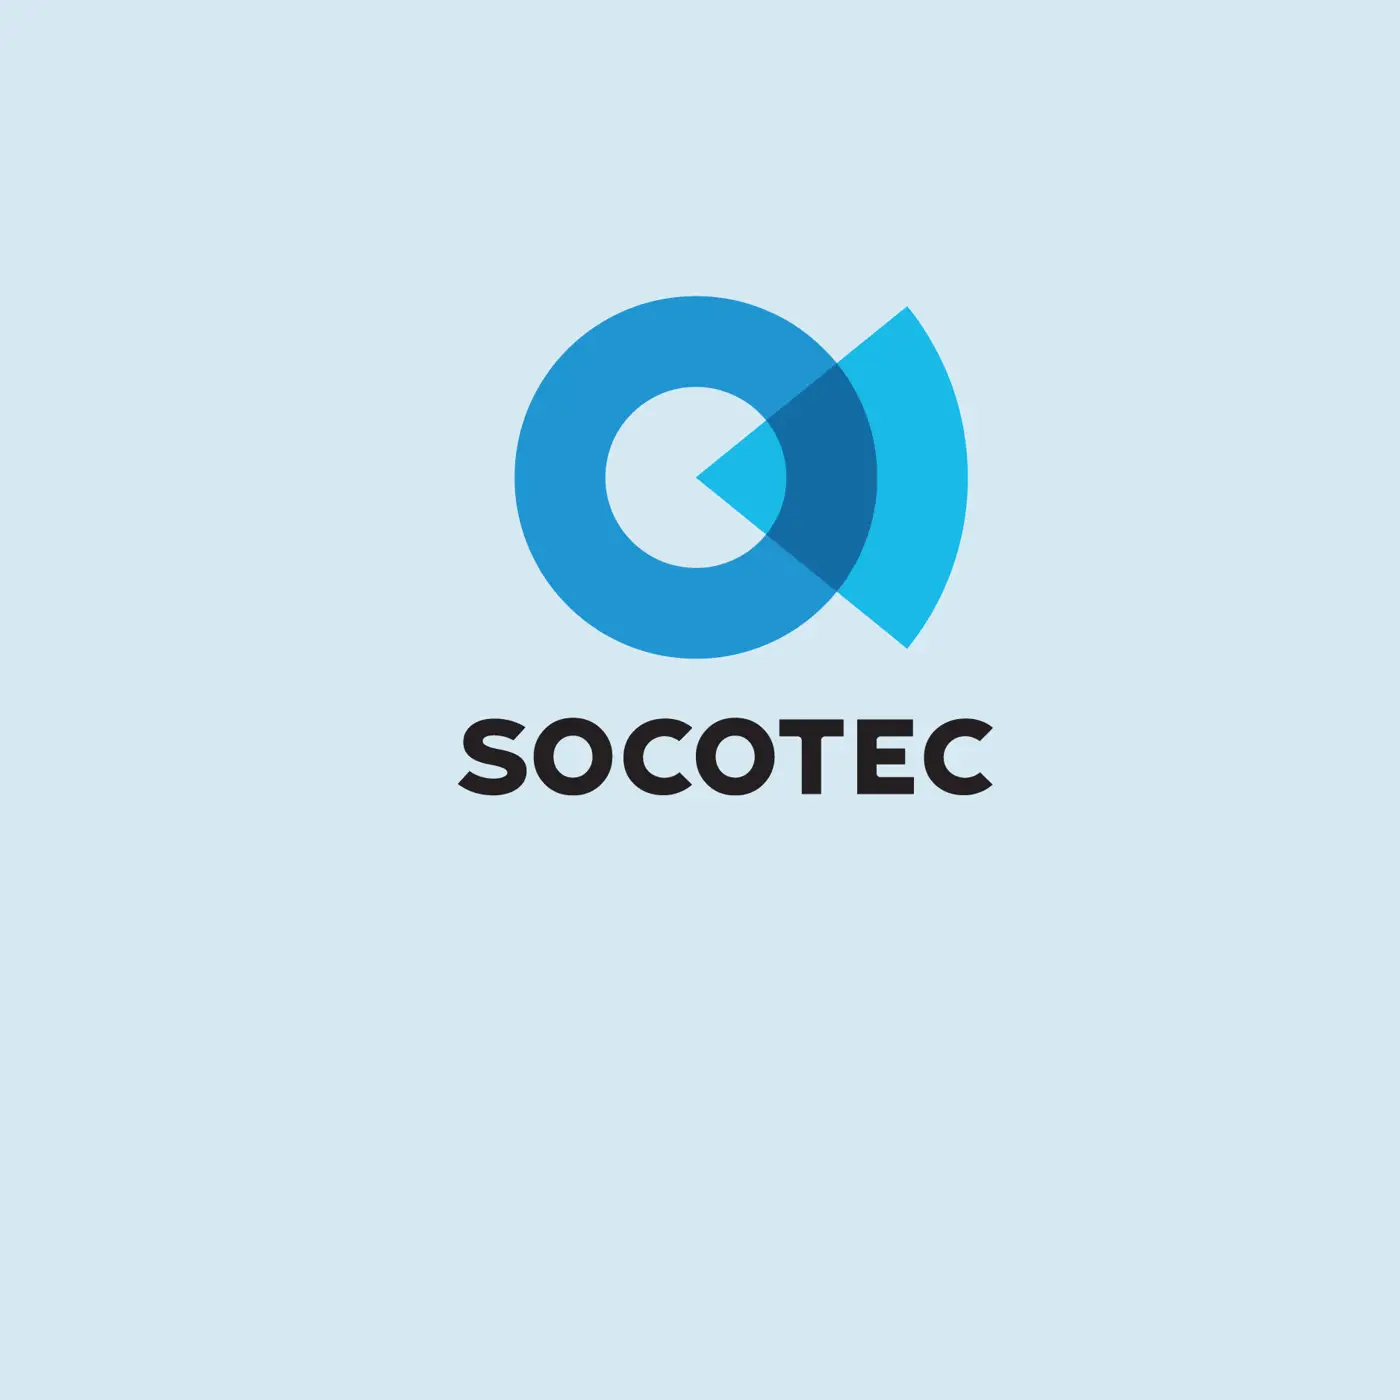 Socotec-01-01